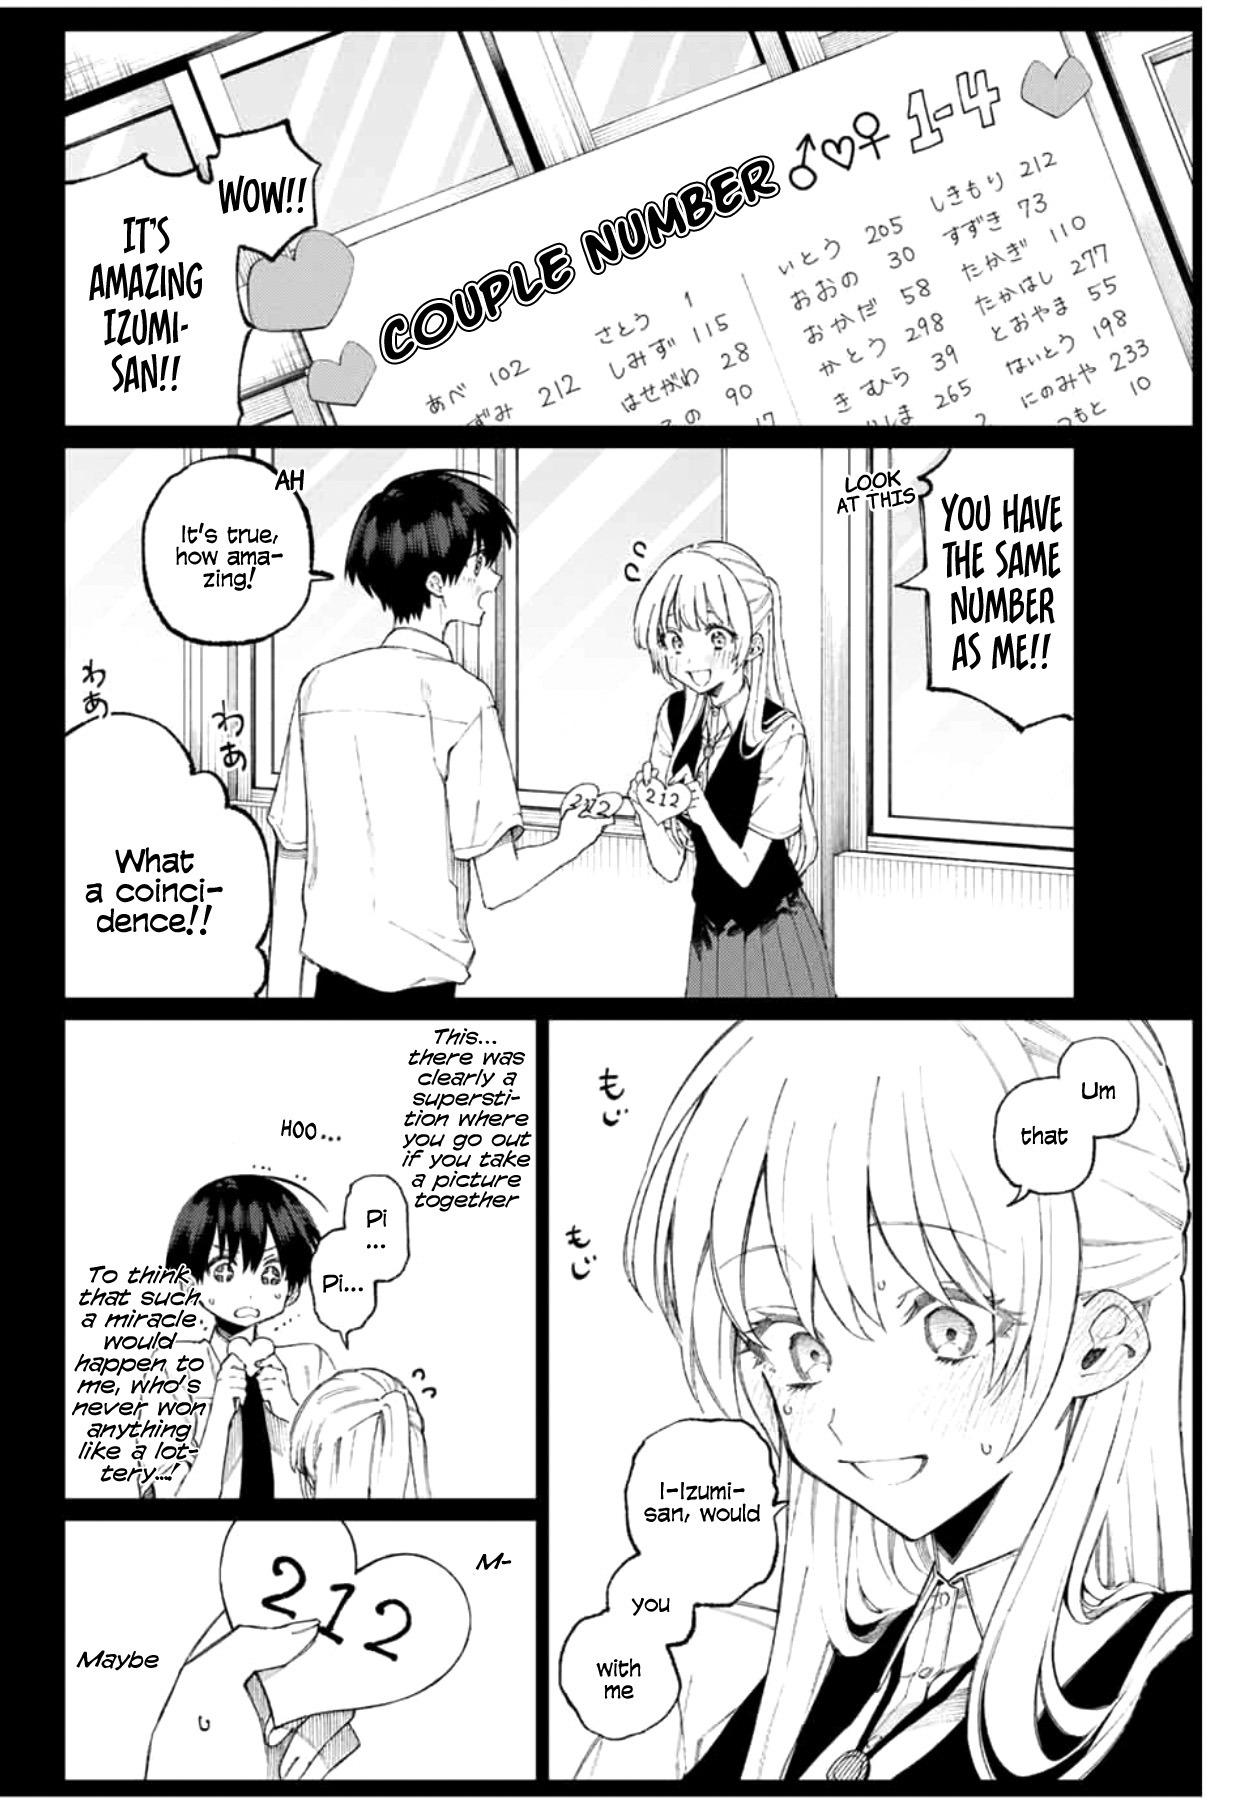 Shikimori's Not Just A Cutie - Page 3